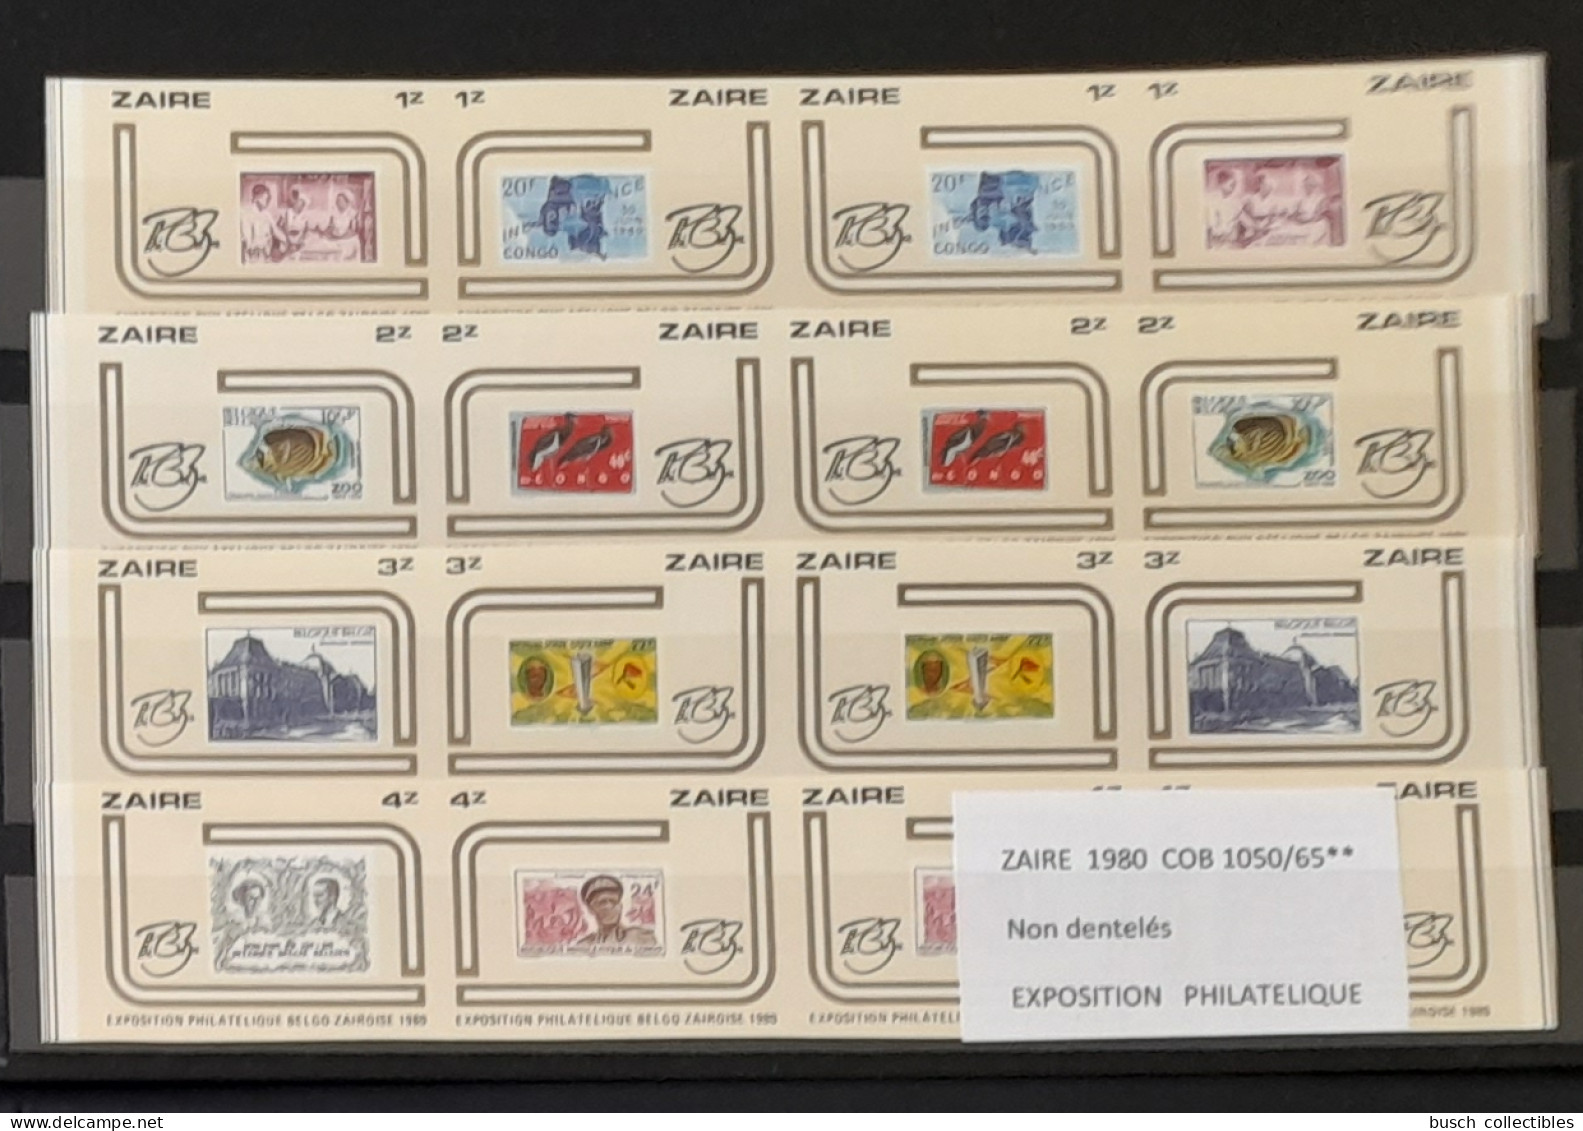 Congo Zaire 1980 COB 1050 - 1065 IMPERF Non Dentelé Exposition Philatélique Zairoise Stamp Exhibition Timbres Sur Stamps - Postzegels Op Postzegels